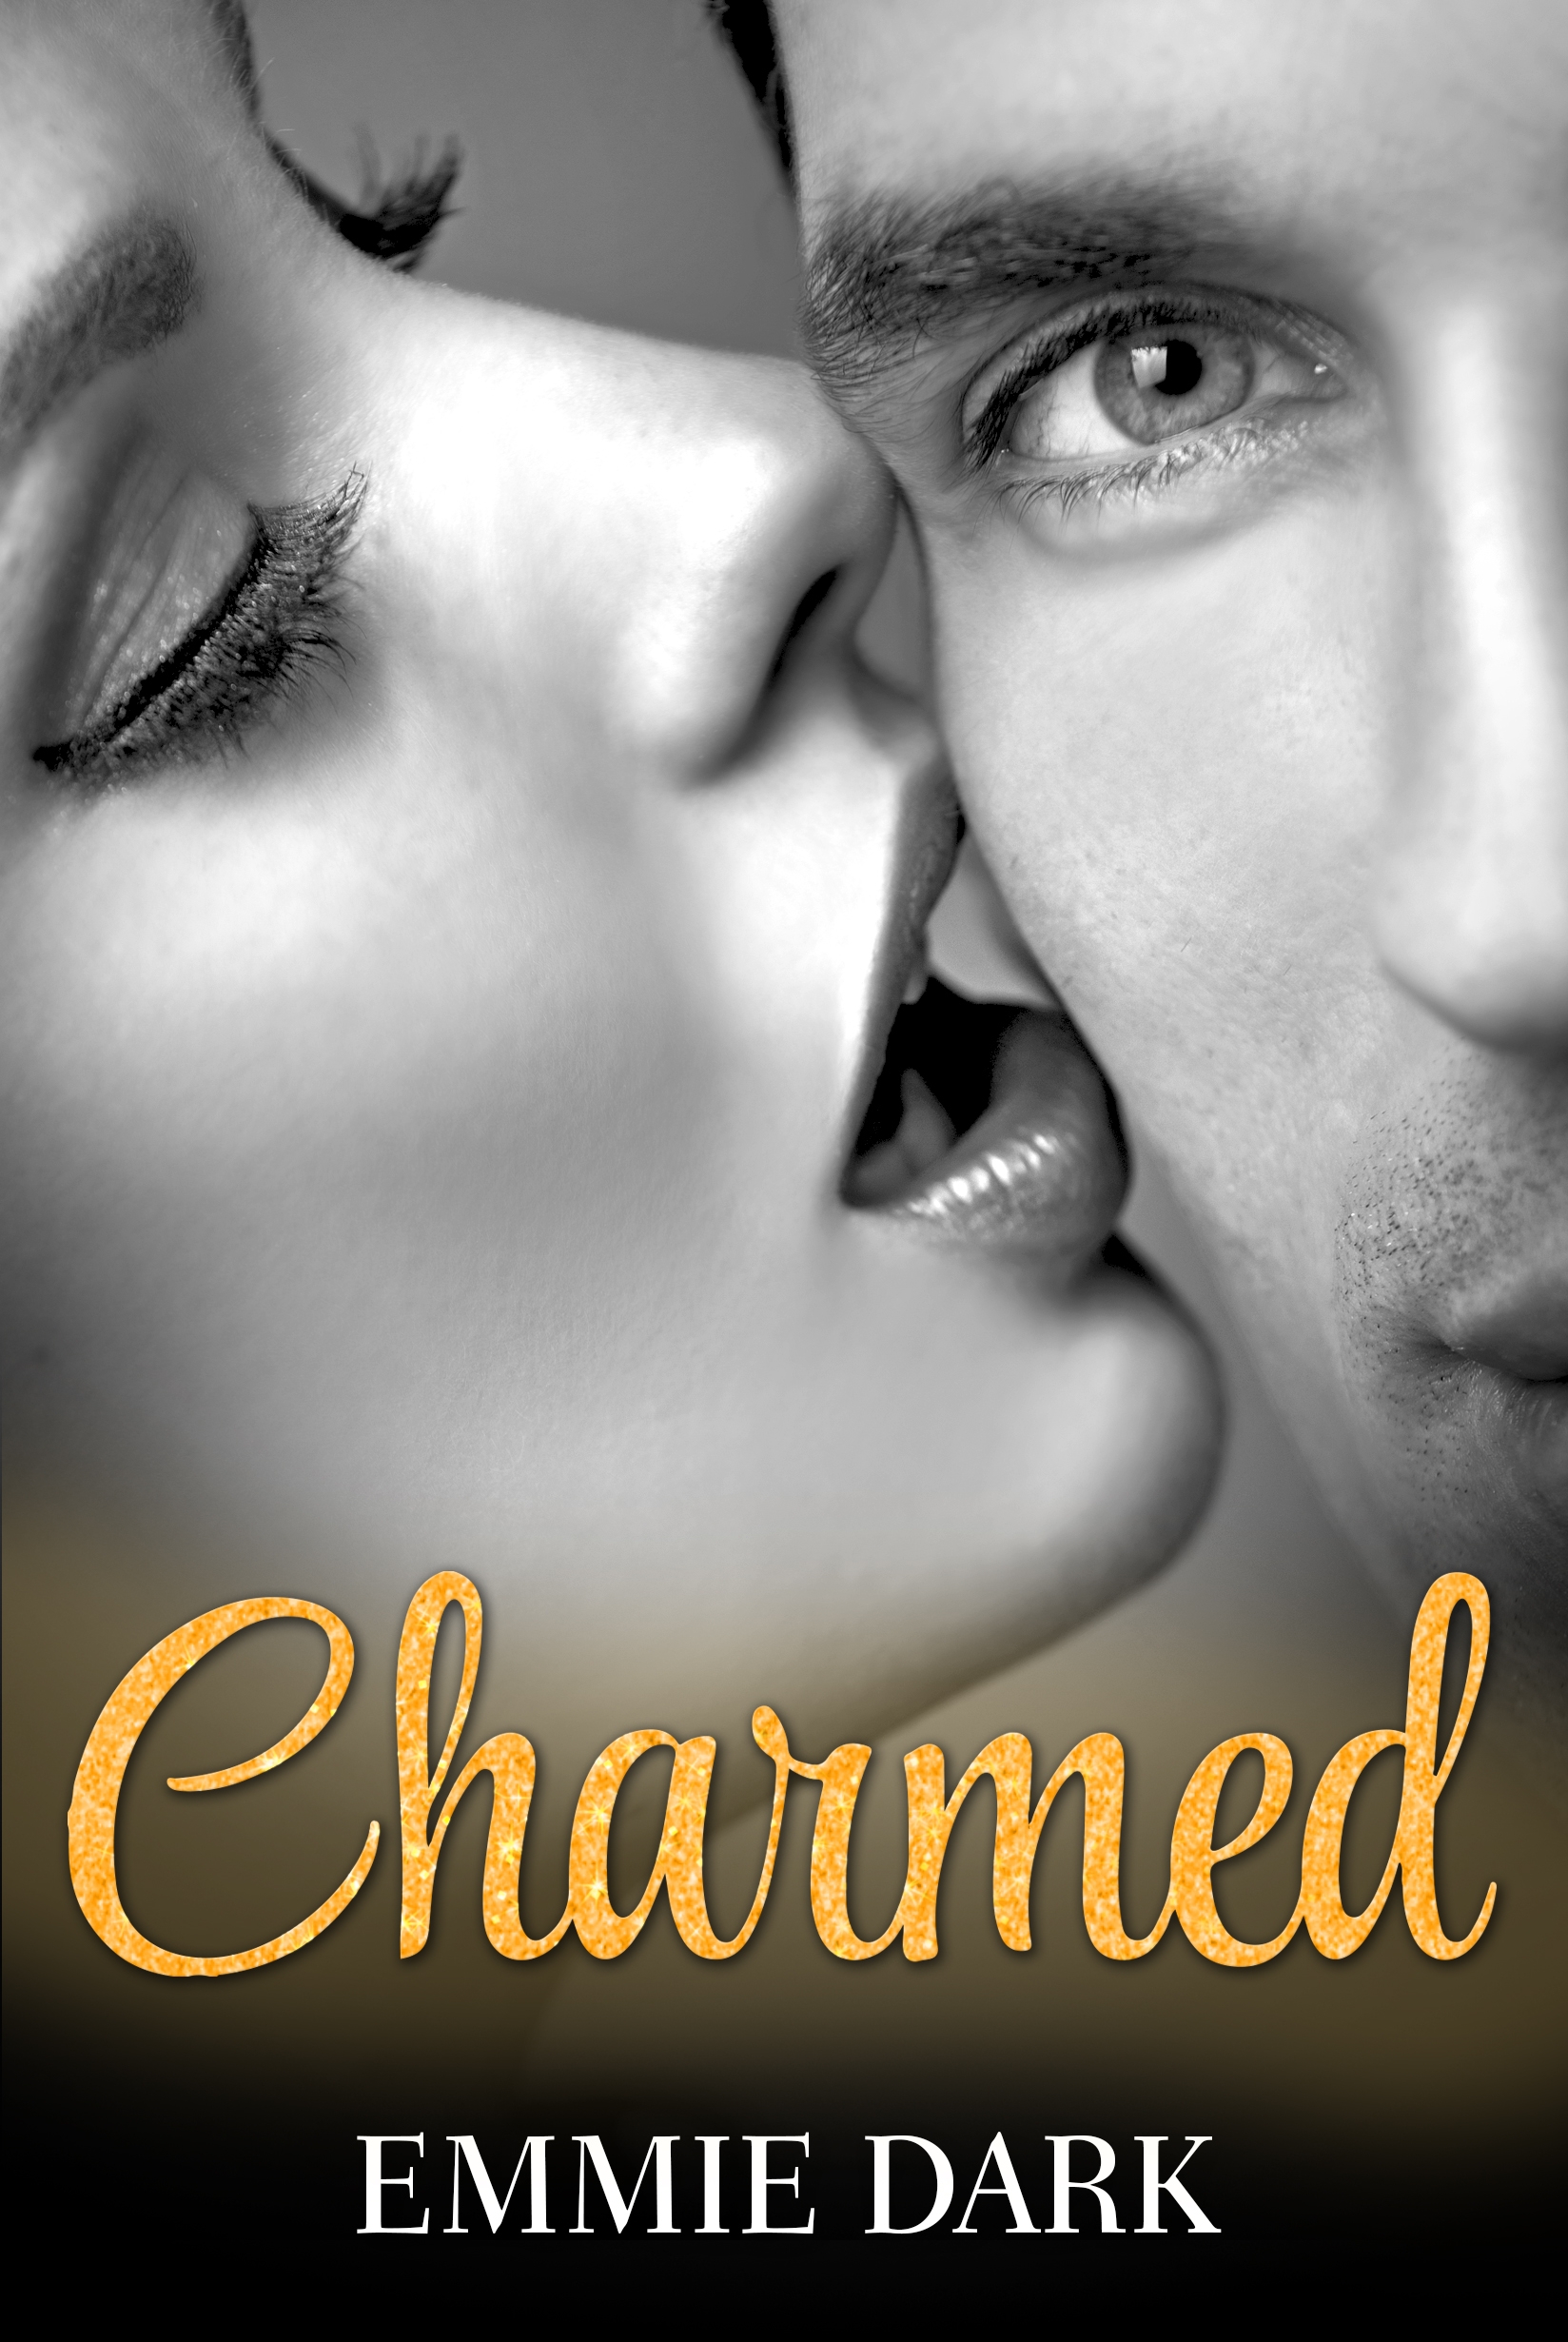 Charmed: Destiny Romance by Emmie Dark